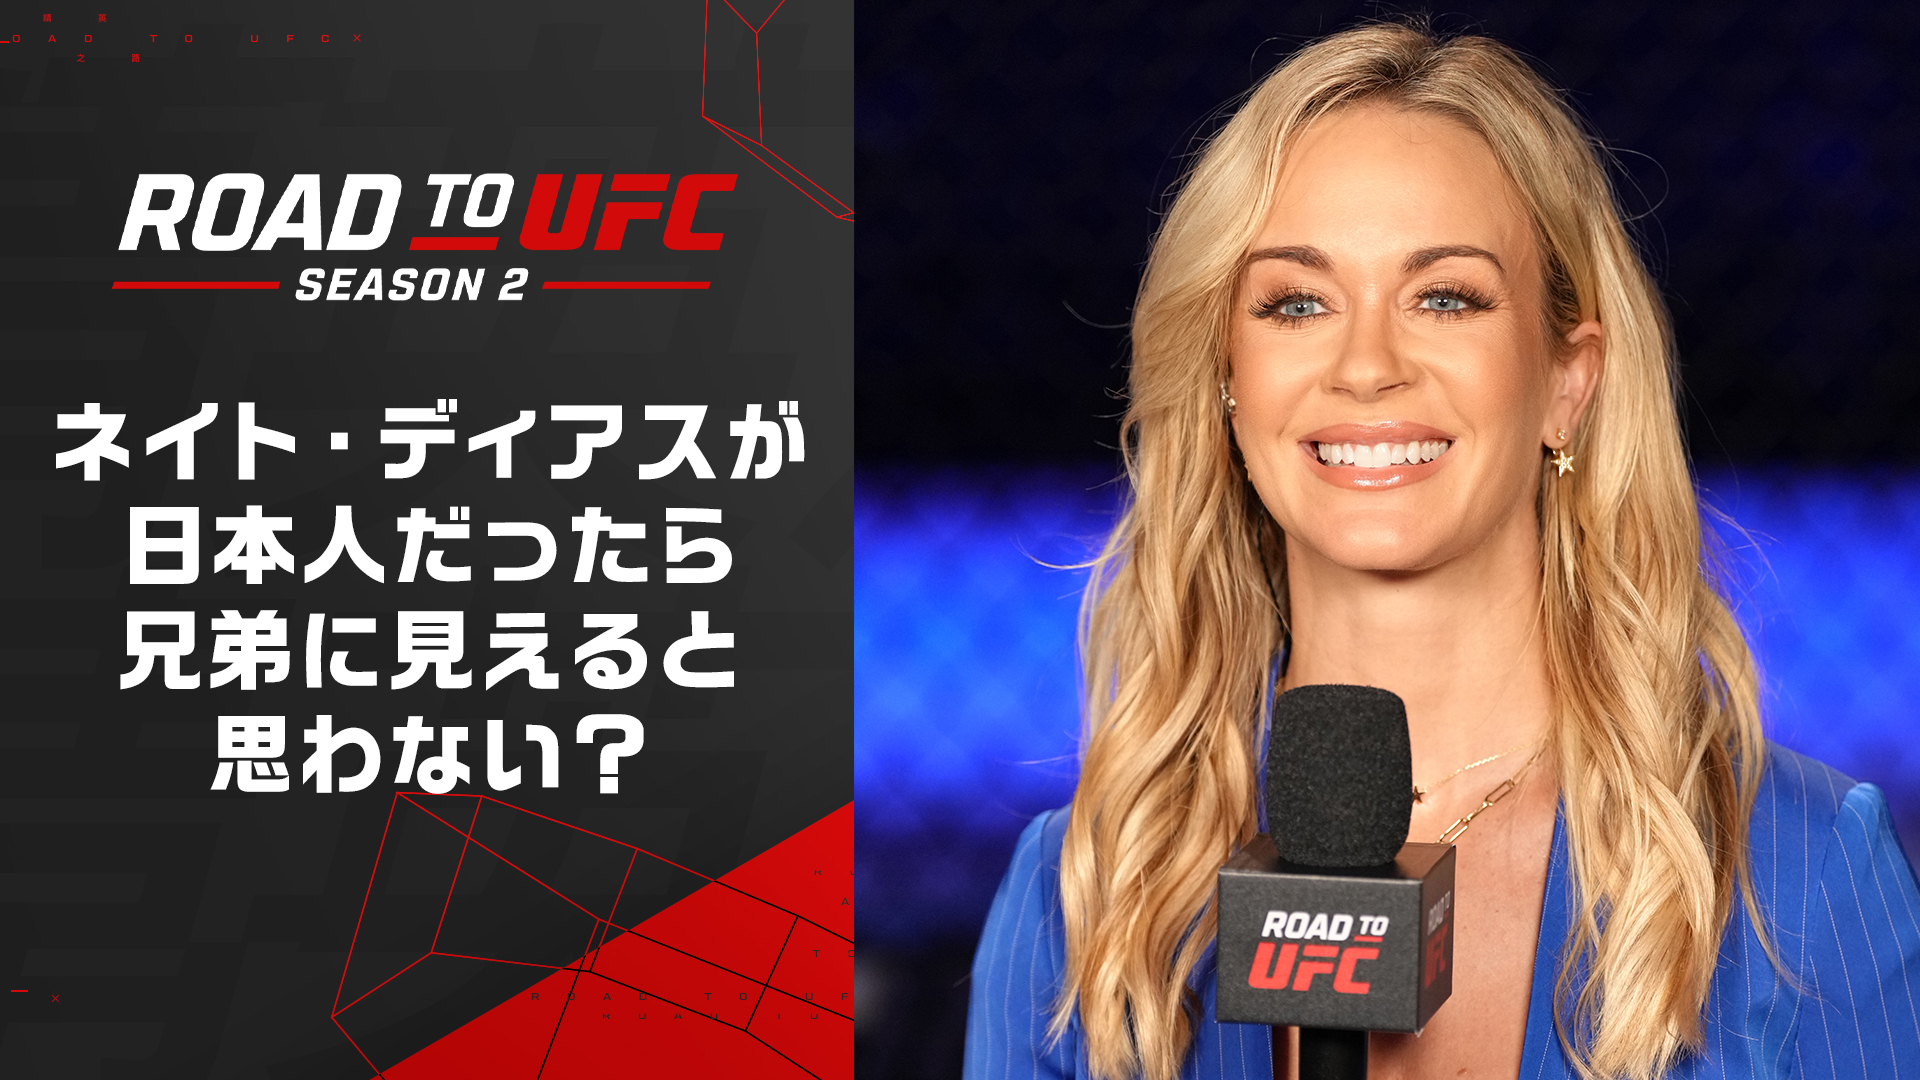 【ROAD TO UFC】ローラ・サンコいわく、上久保周哉はネイト・ディアス似!? 「日本には優秀なファイターがたくさんいる」